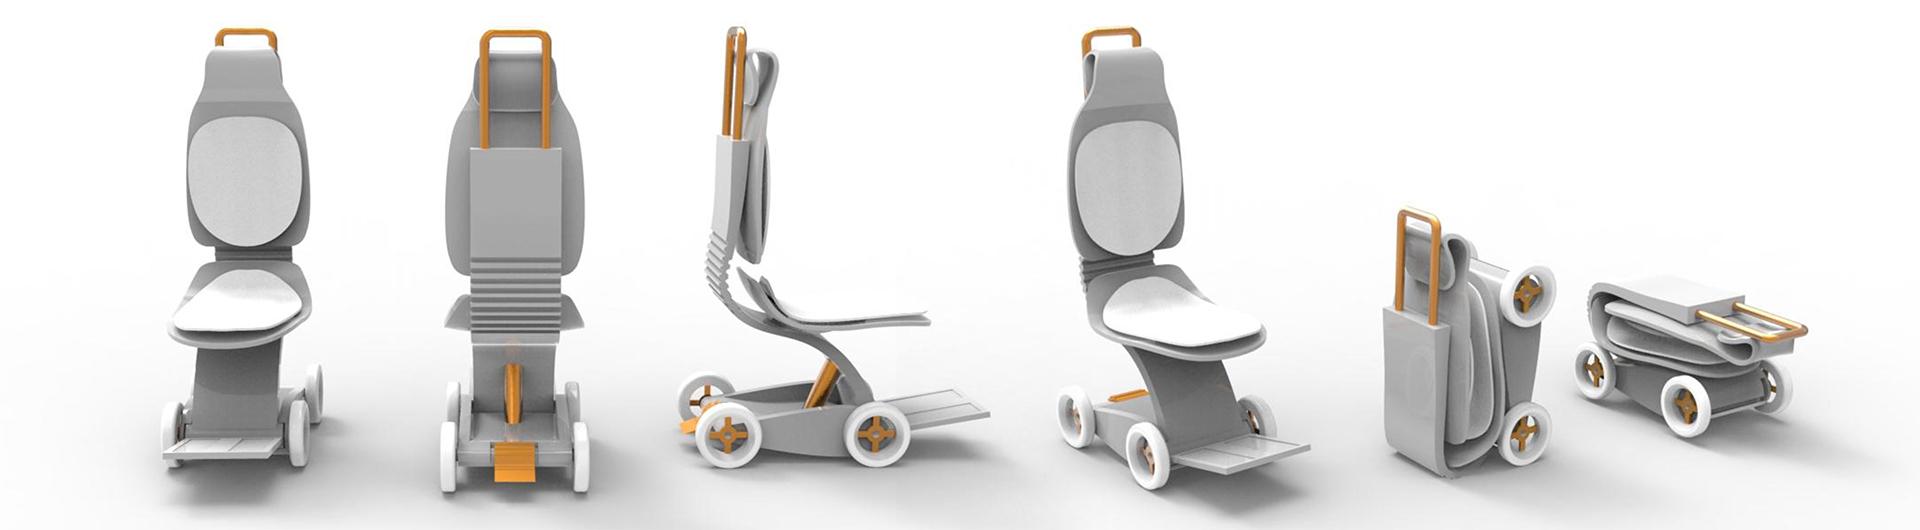 Puyi Liu's "WCY" Aisle Wheelchair